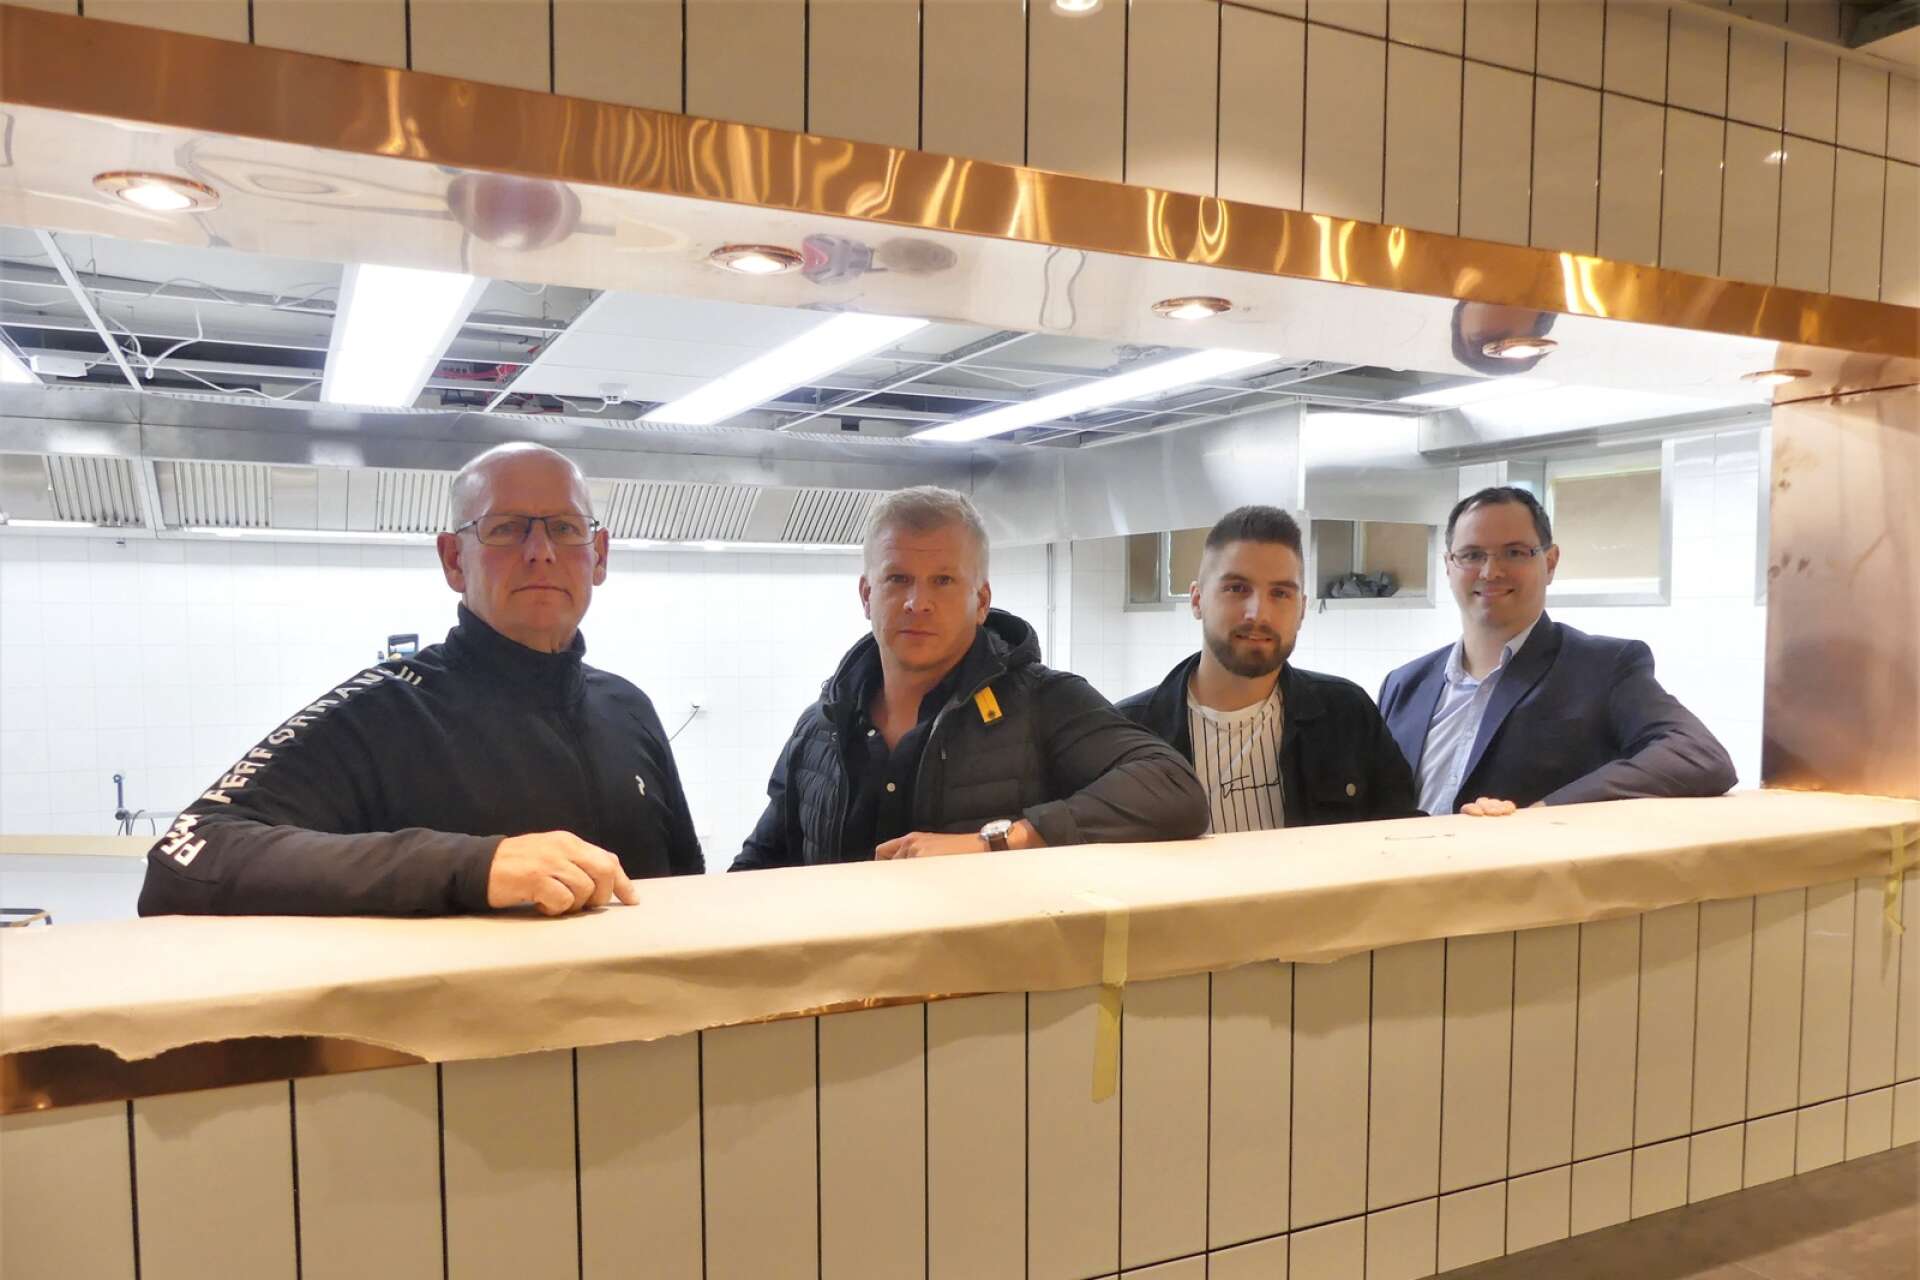 Restaurang Presseriet tog över lokalerna efter nedlagda Nygårdsrestaurangen hösten 2021 och Lars Bjurteg, Andreas Tellfors, Robin Pettersson och Tommy Olsson presenterade planerna.